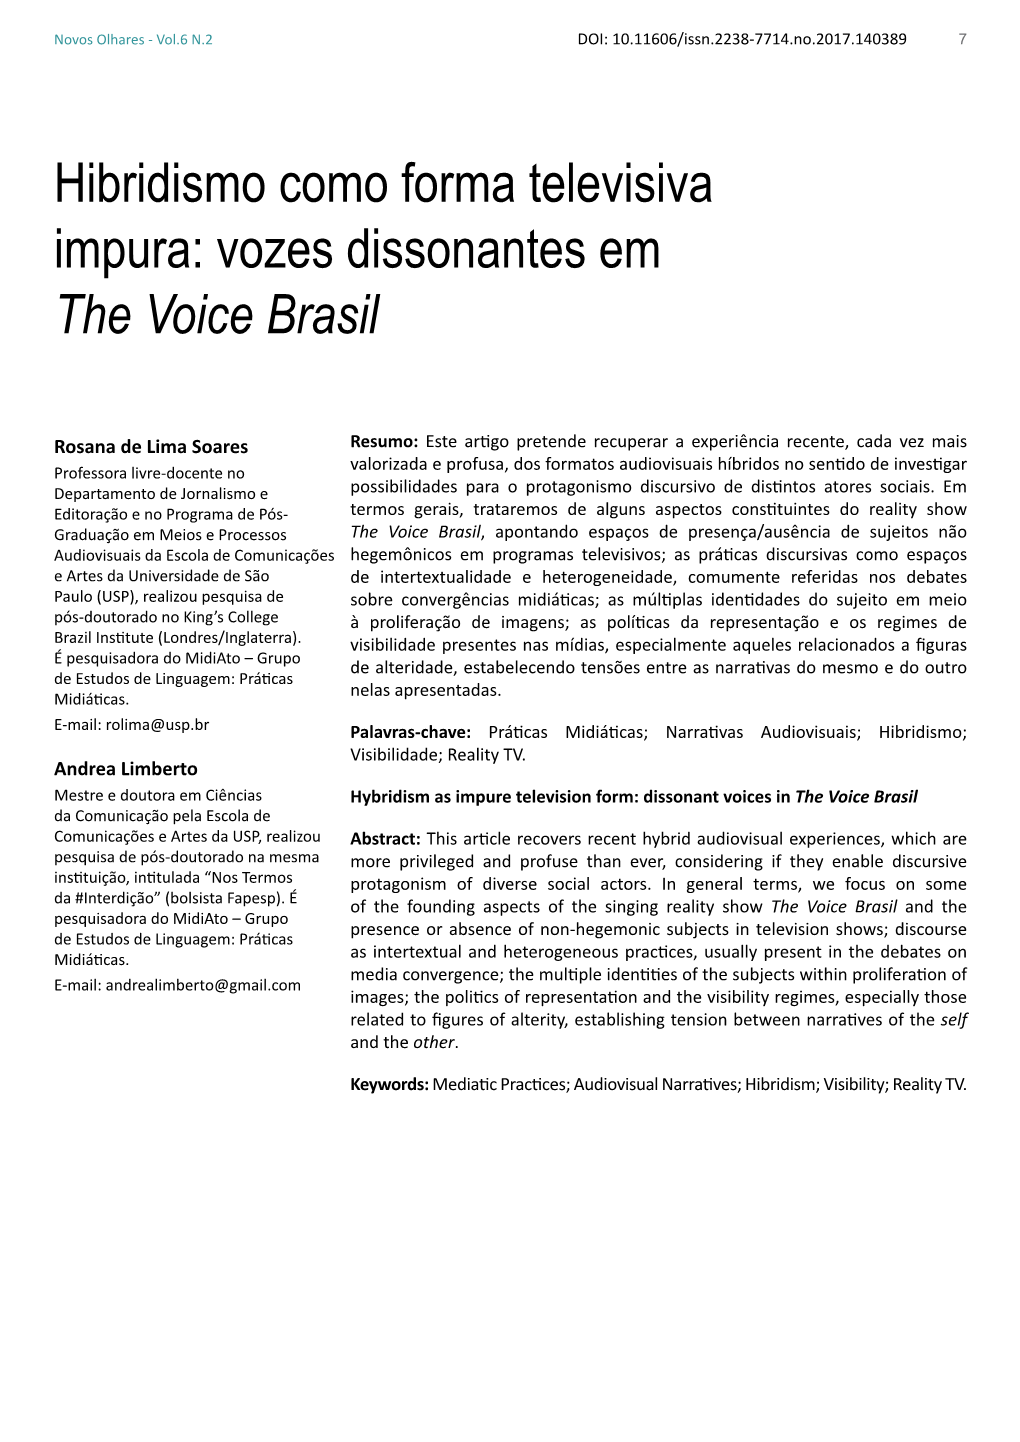 Hibridismo Como Forma Televisiva Impura: Vozes Dissonantes Em the Voice Brasil